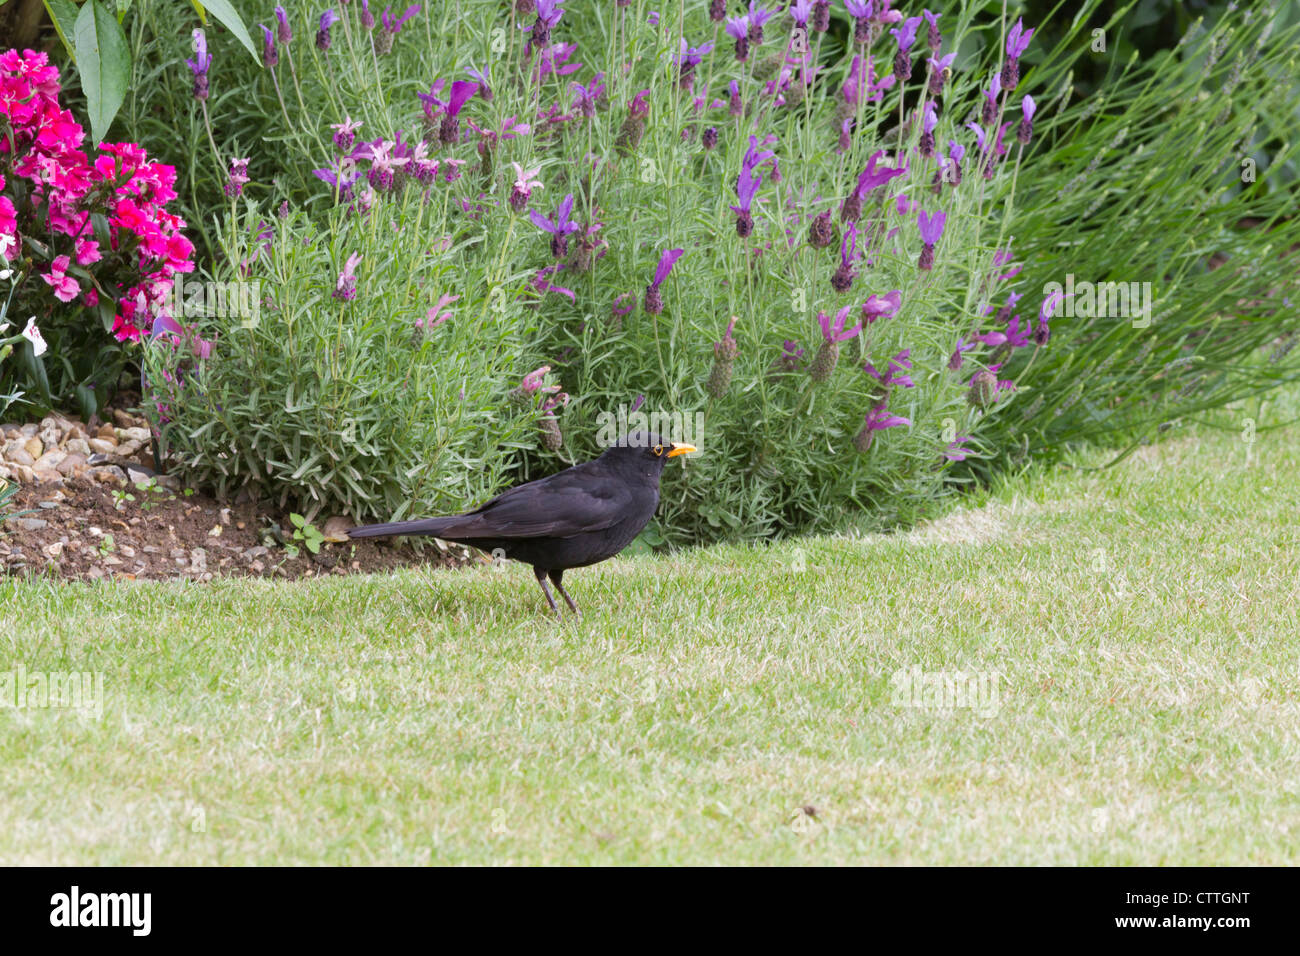 A male blackbird in a suburban Surrey garden Stock Photo